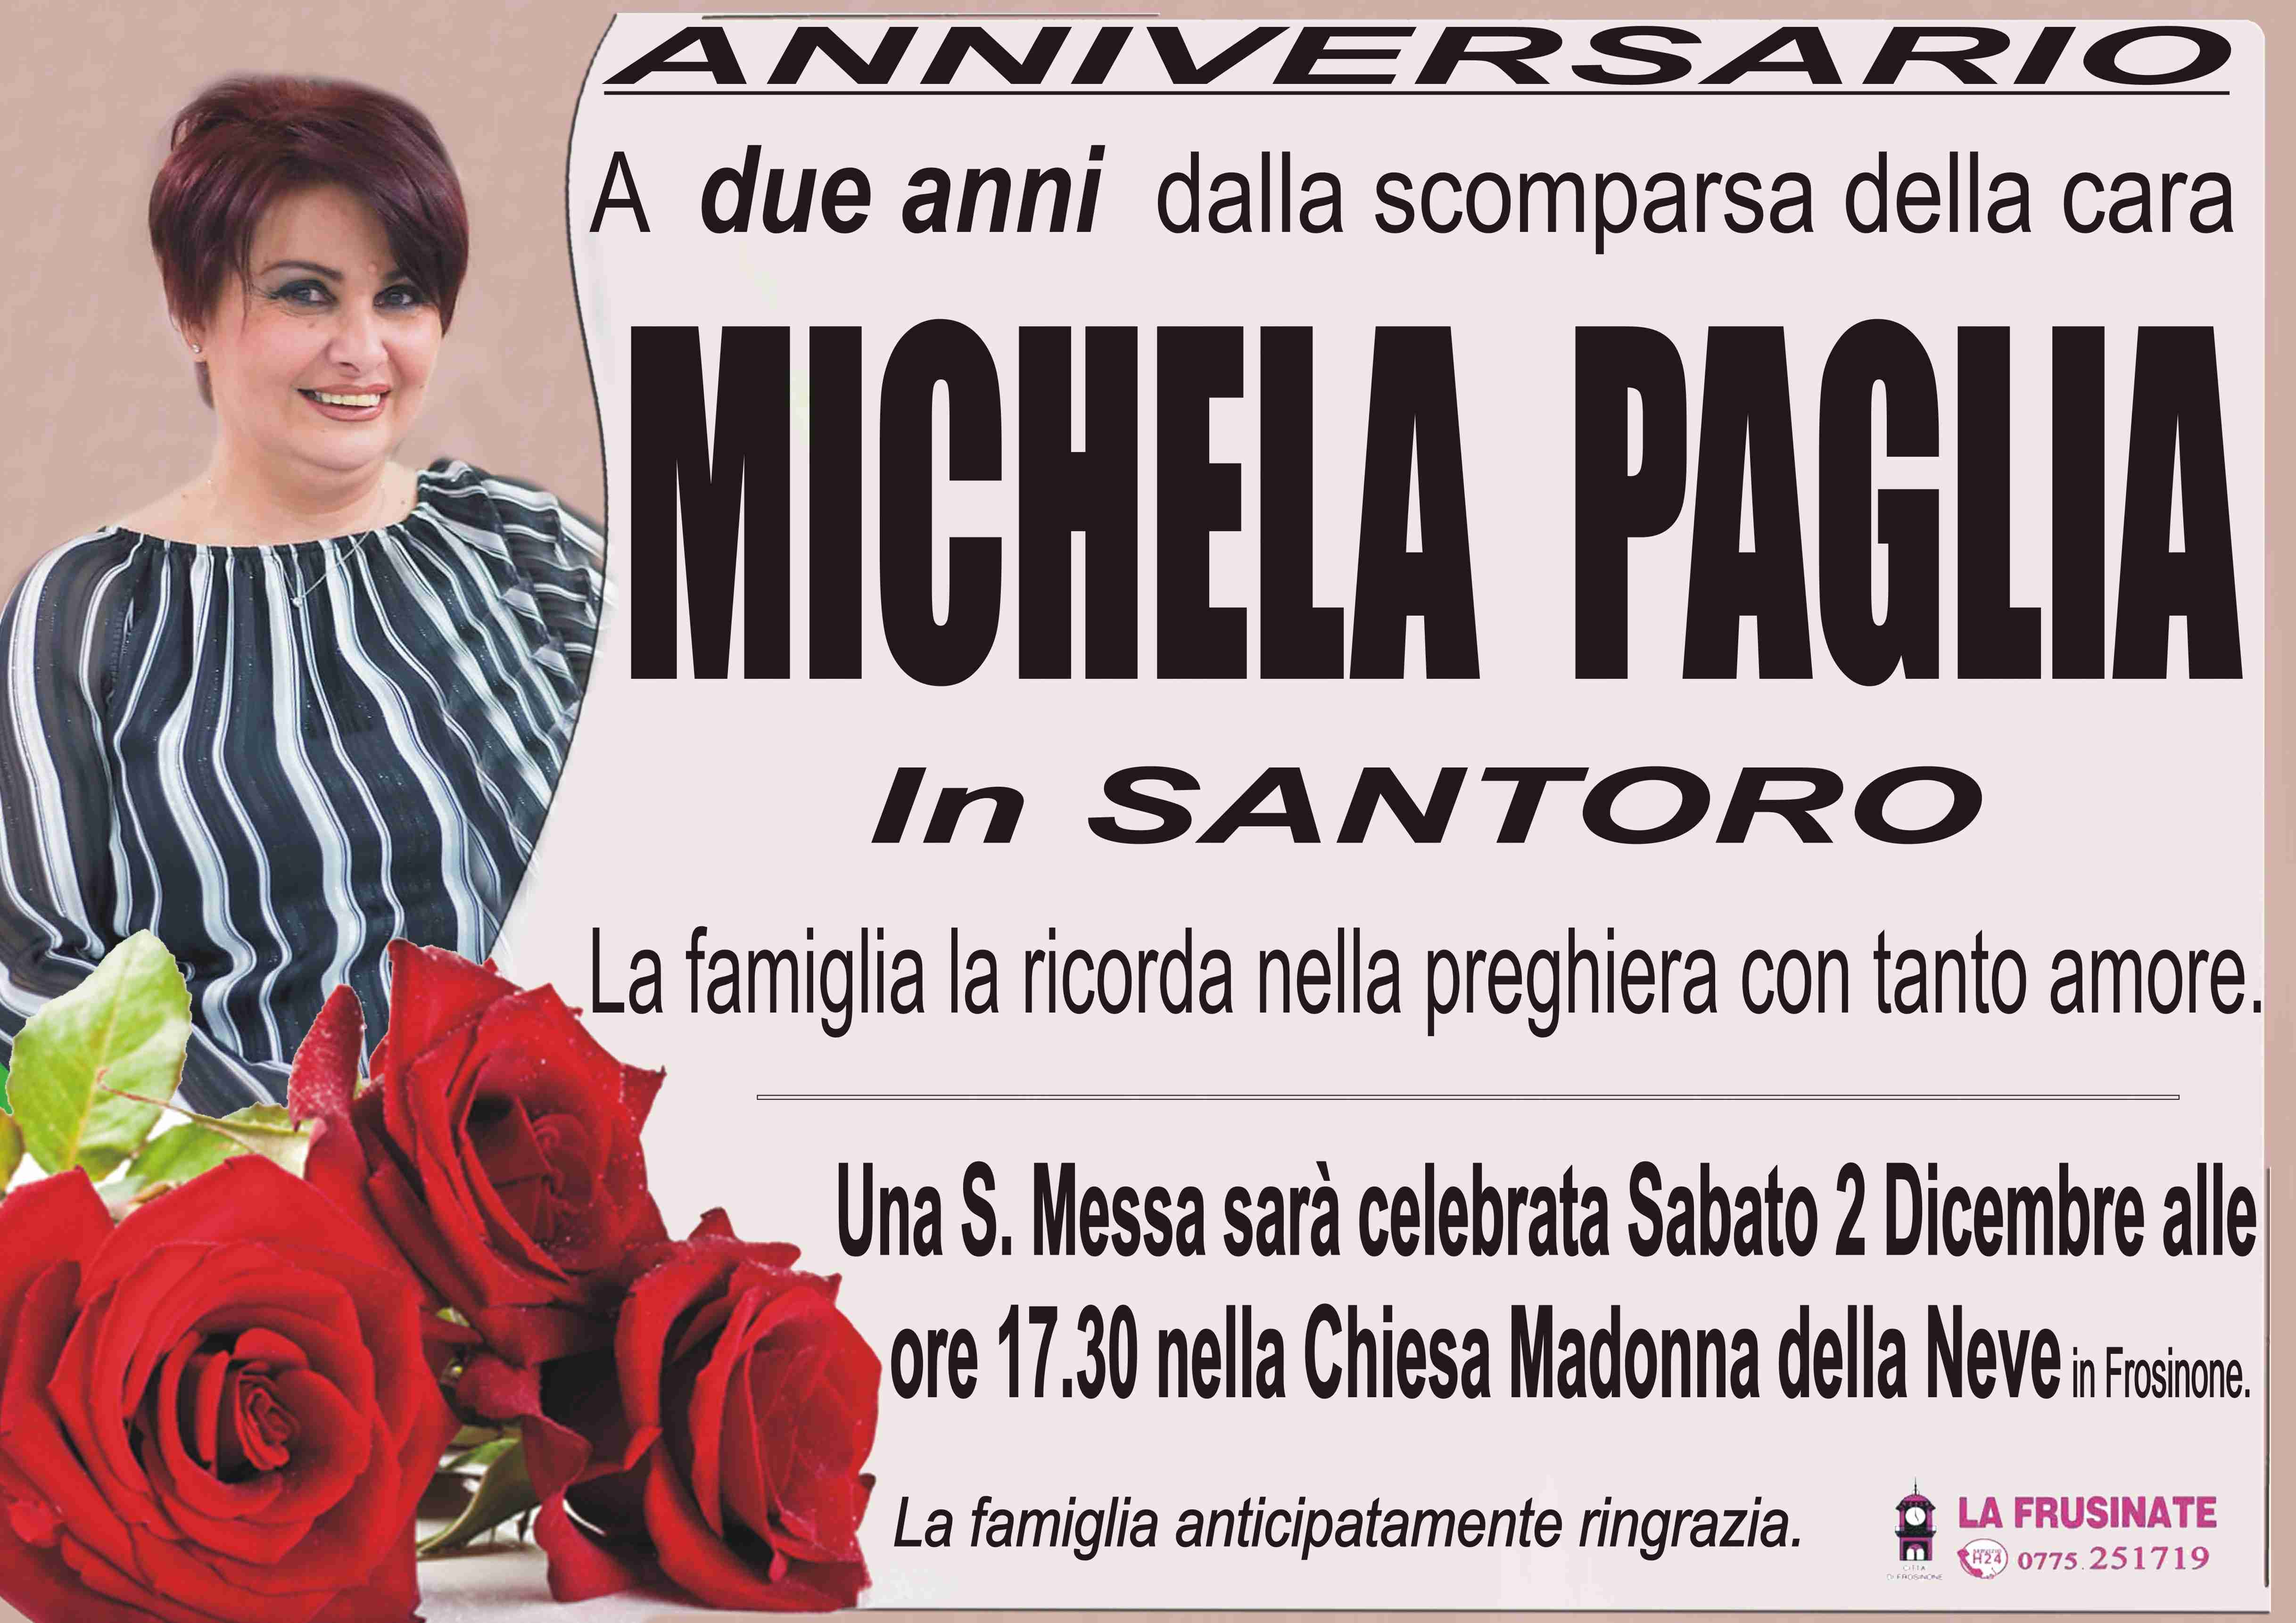 Michela Paglia